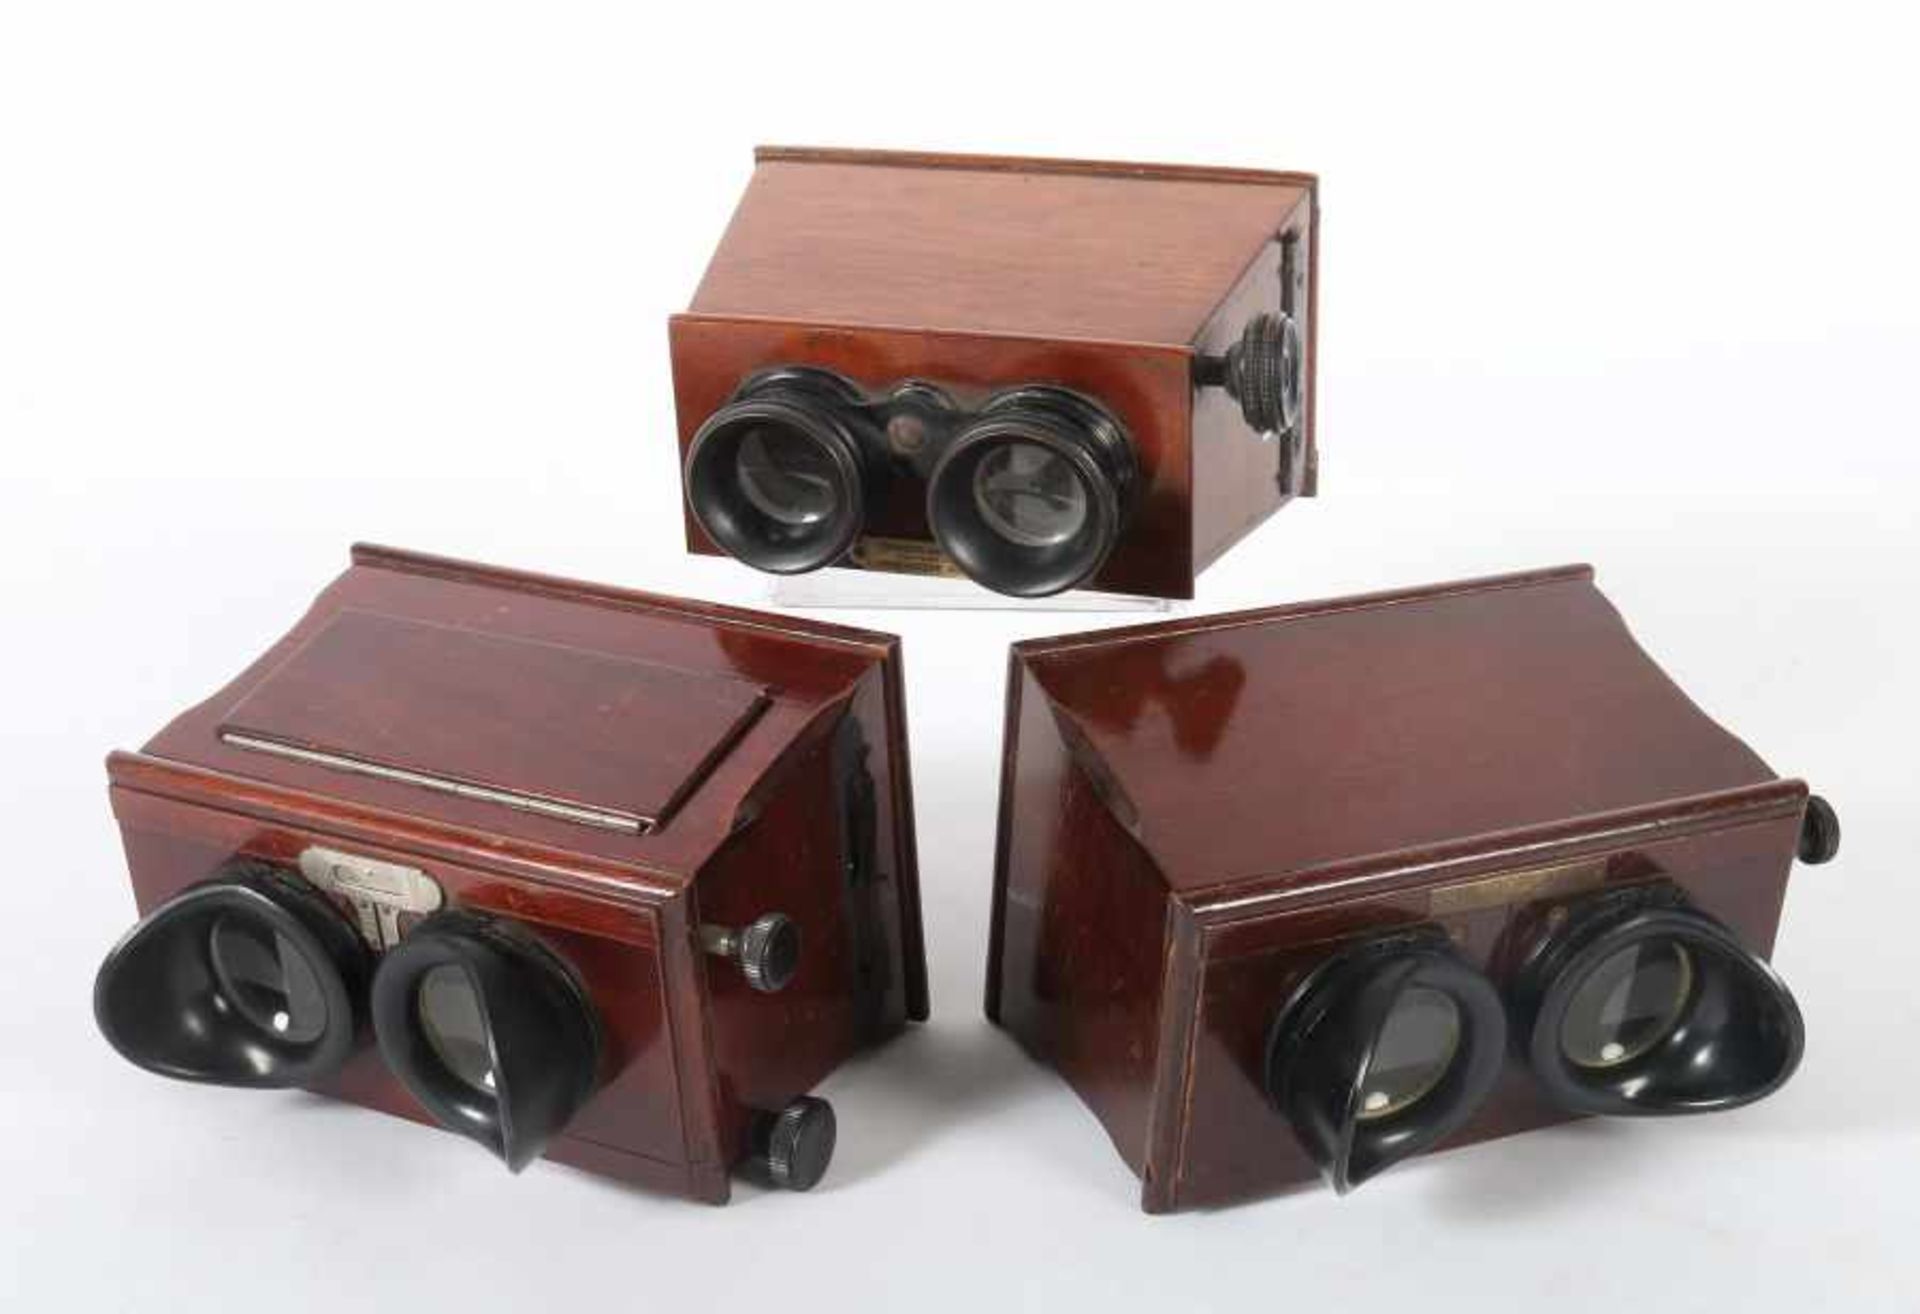 3 Hand-StereobetrachterJules Richard und Heidoplast, um 1925/30, variierende Hölzer, für das